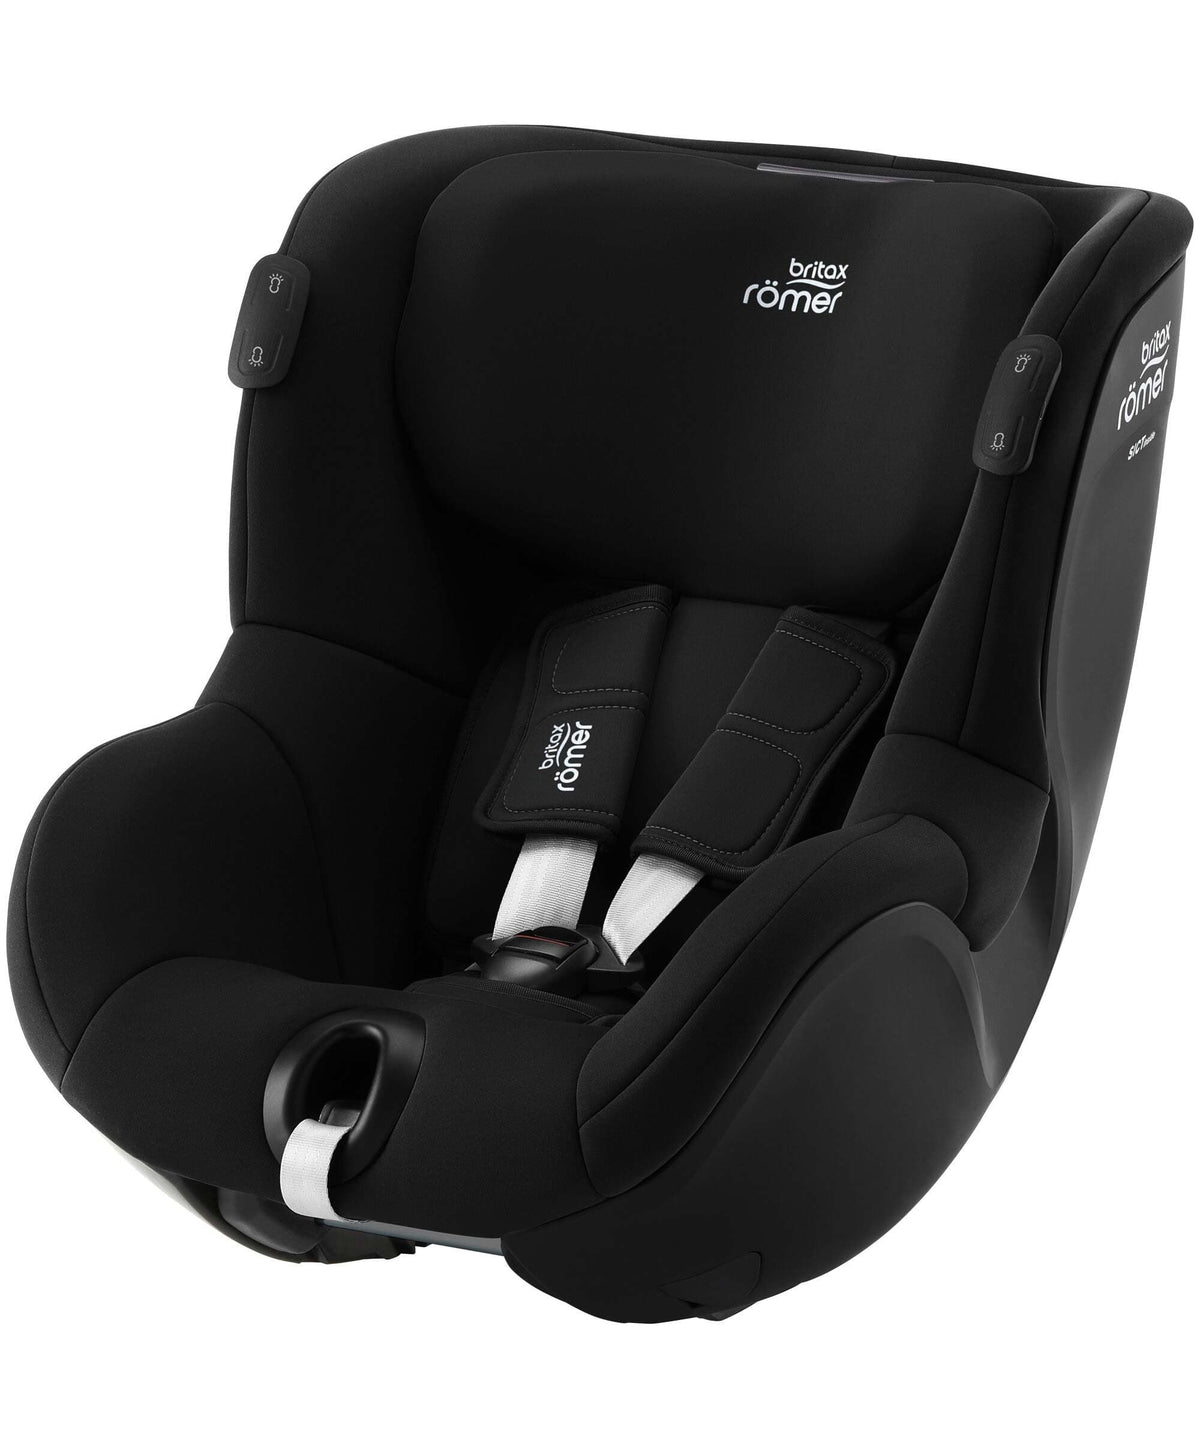 Britax Römer Dualfix Pro car seat